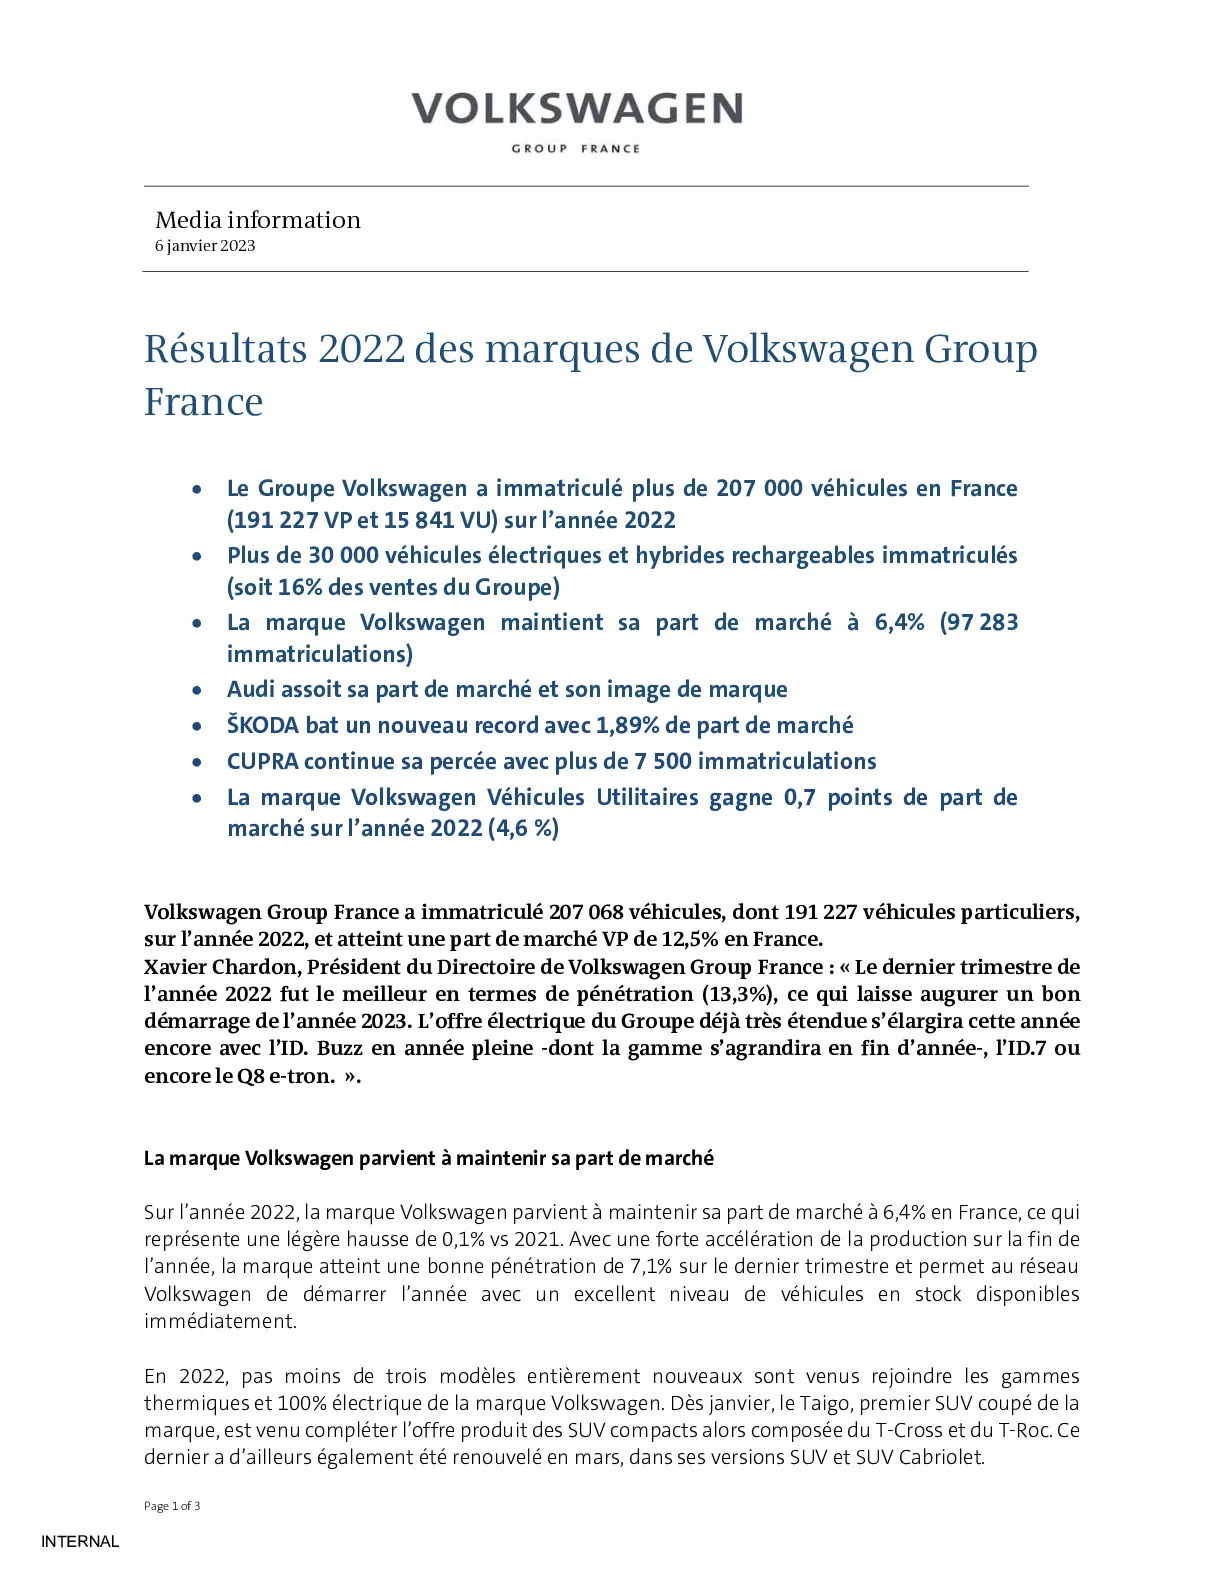 23_01_06_Résultats 2022 des marques de Volkswagen Group France-pdf